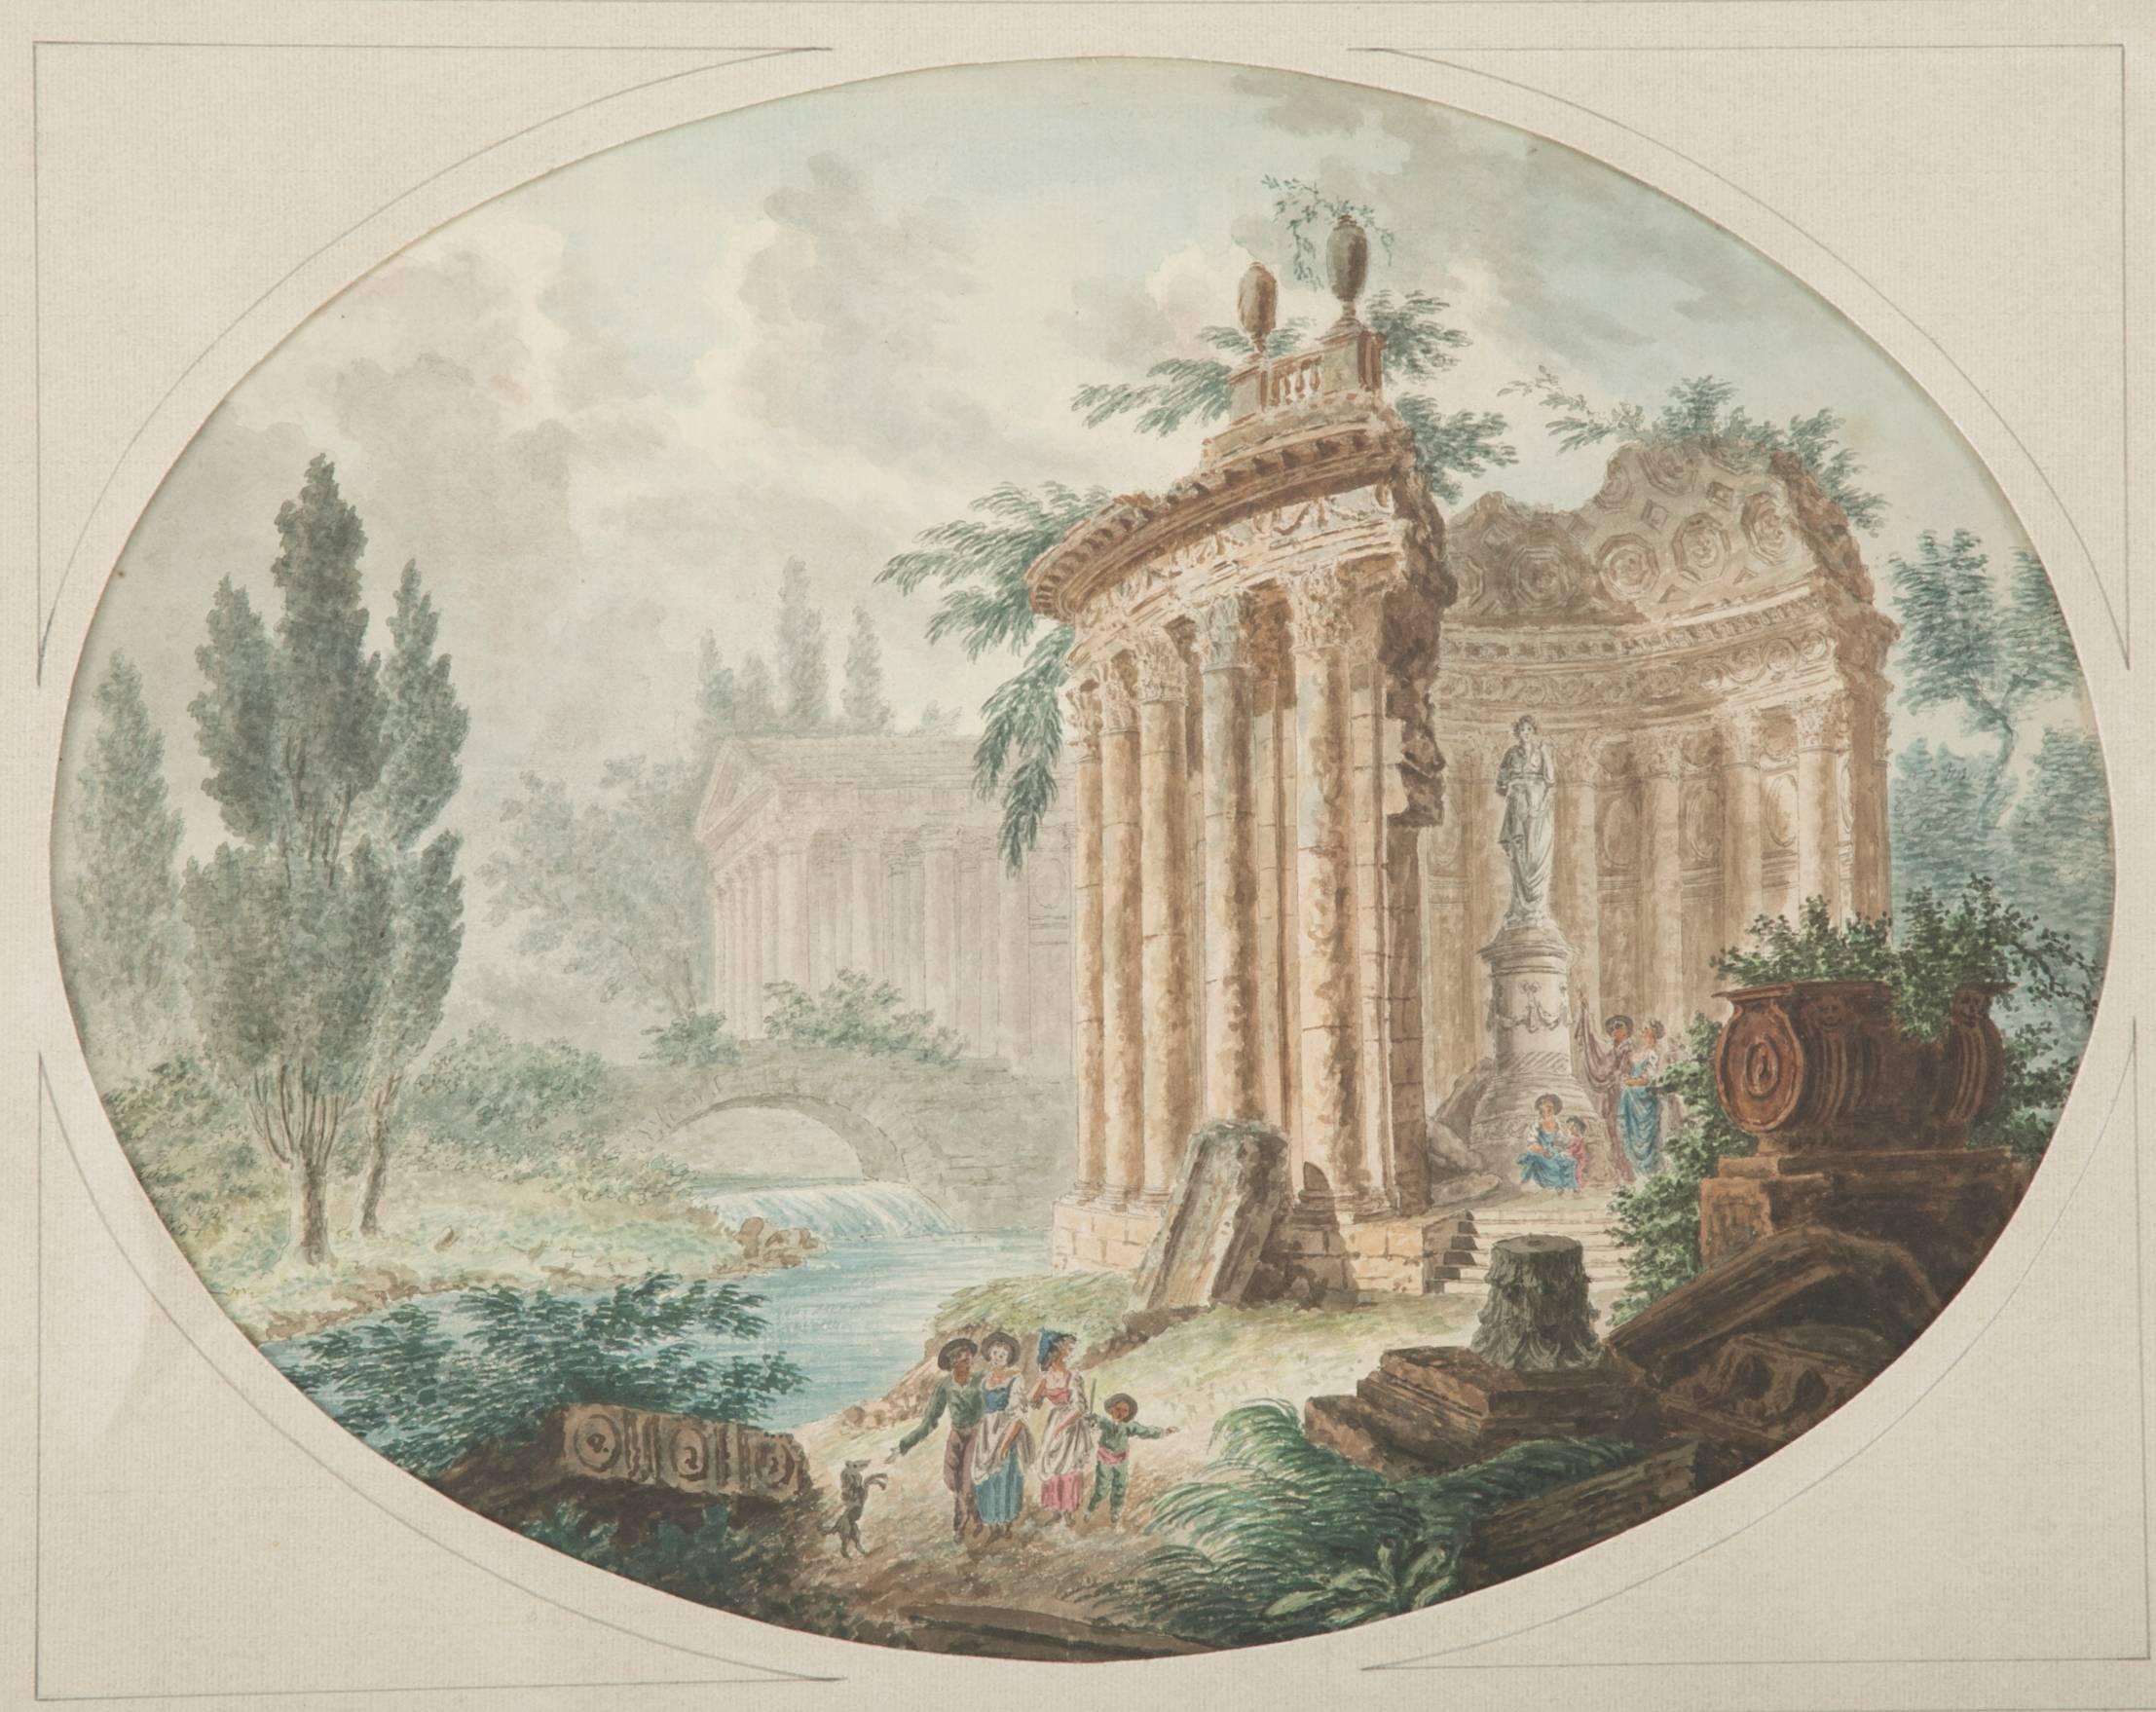 capriccio italien du 18e siècle représentant des ruines basées sur le temple romain de Vesta visité par un groupe de voyageurs du Grand Tour. Avec un pont en arc et une autre structure à colonnes à l'arrière-plan, des cyprès et des fragments